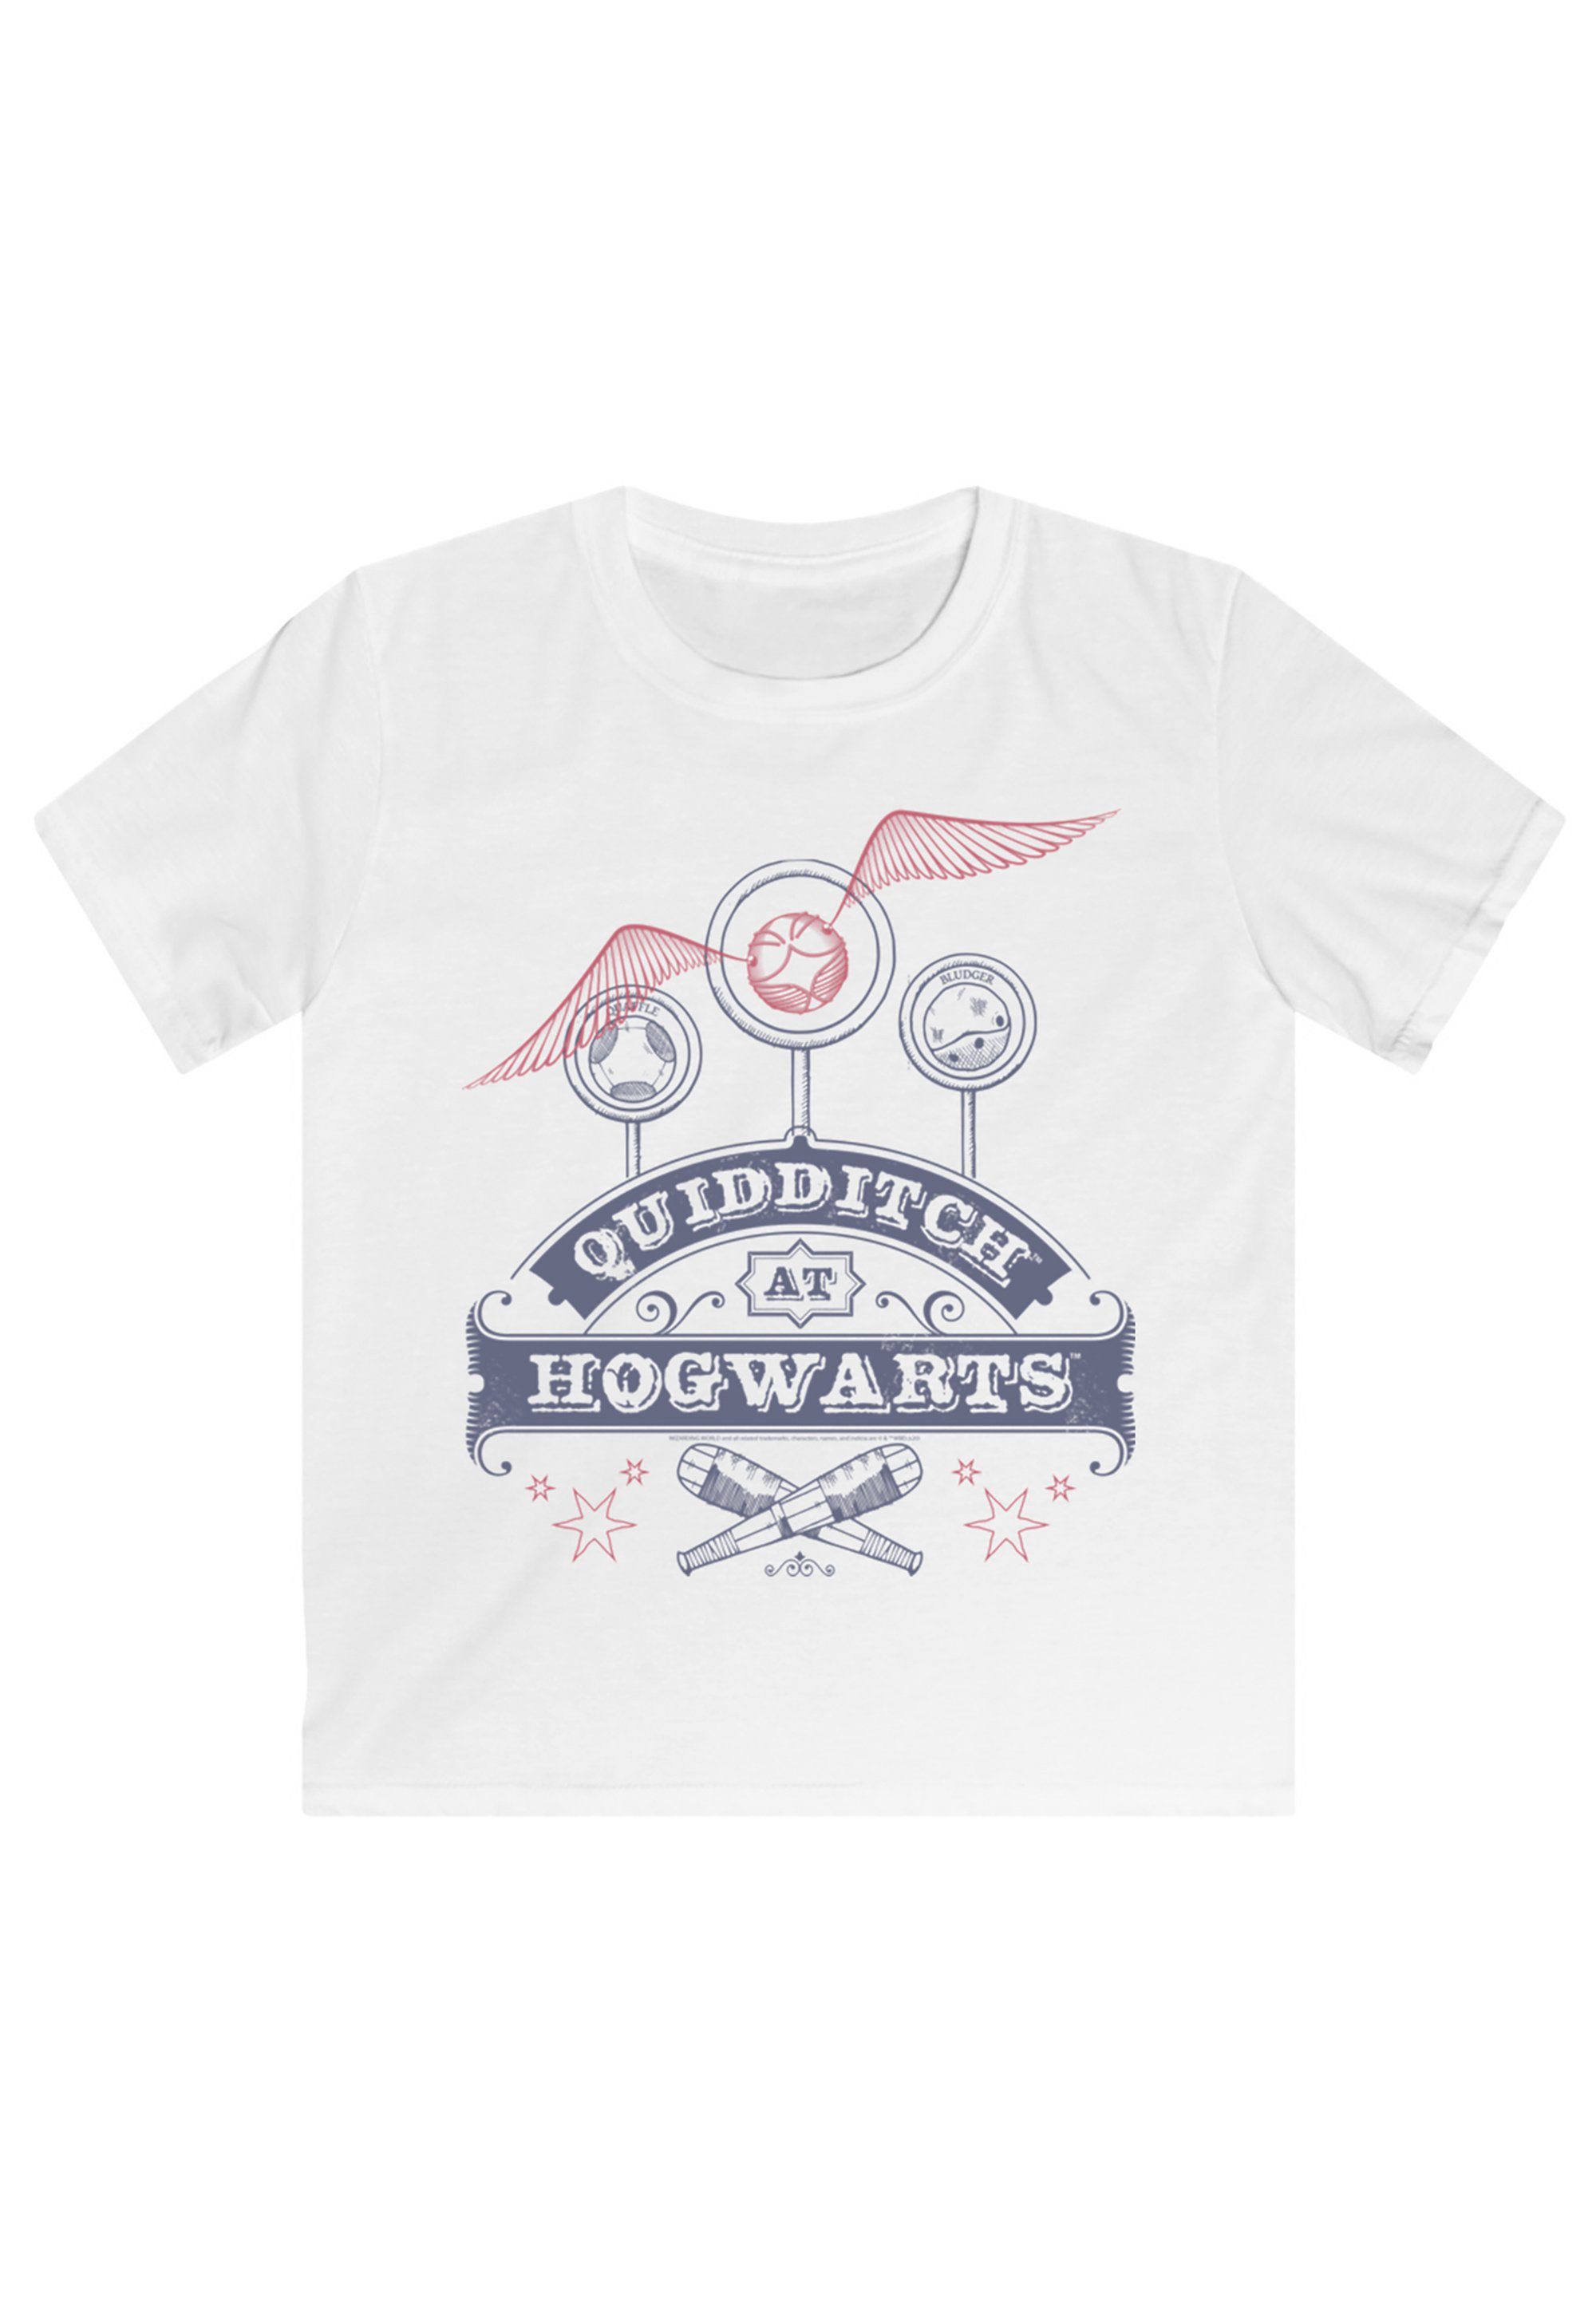 F4NT4STIC Harry T-Shirt Print, T-Shirt Harry lizenziertes Offiziell Hogwarts Potter Potter Quidditch